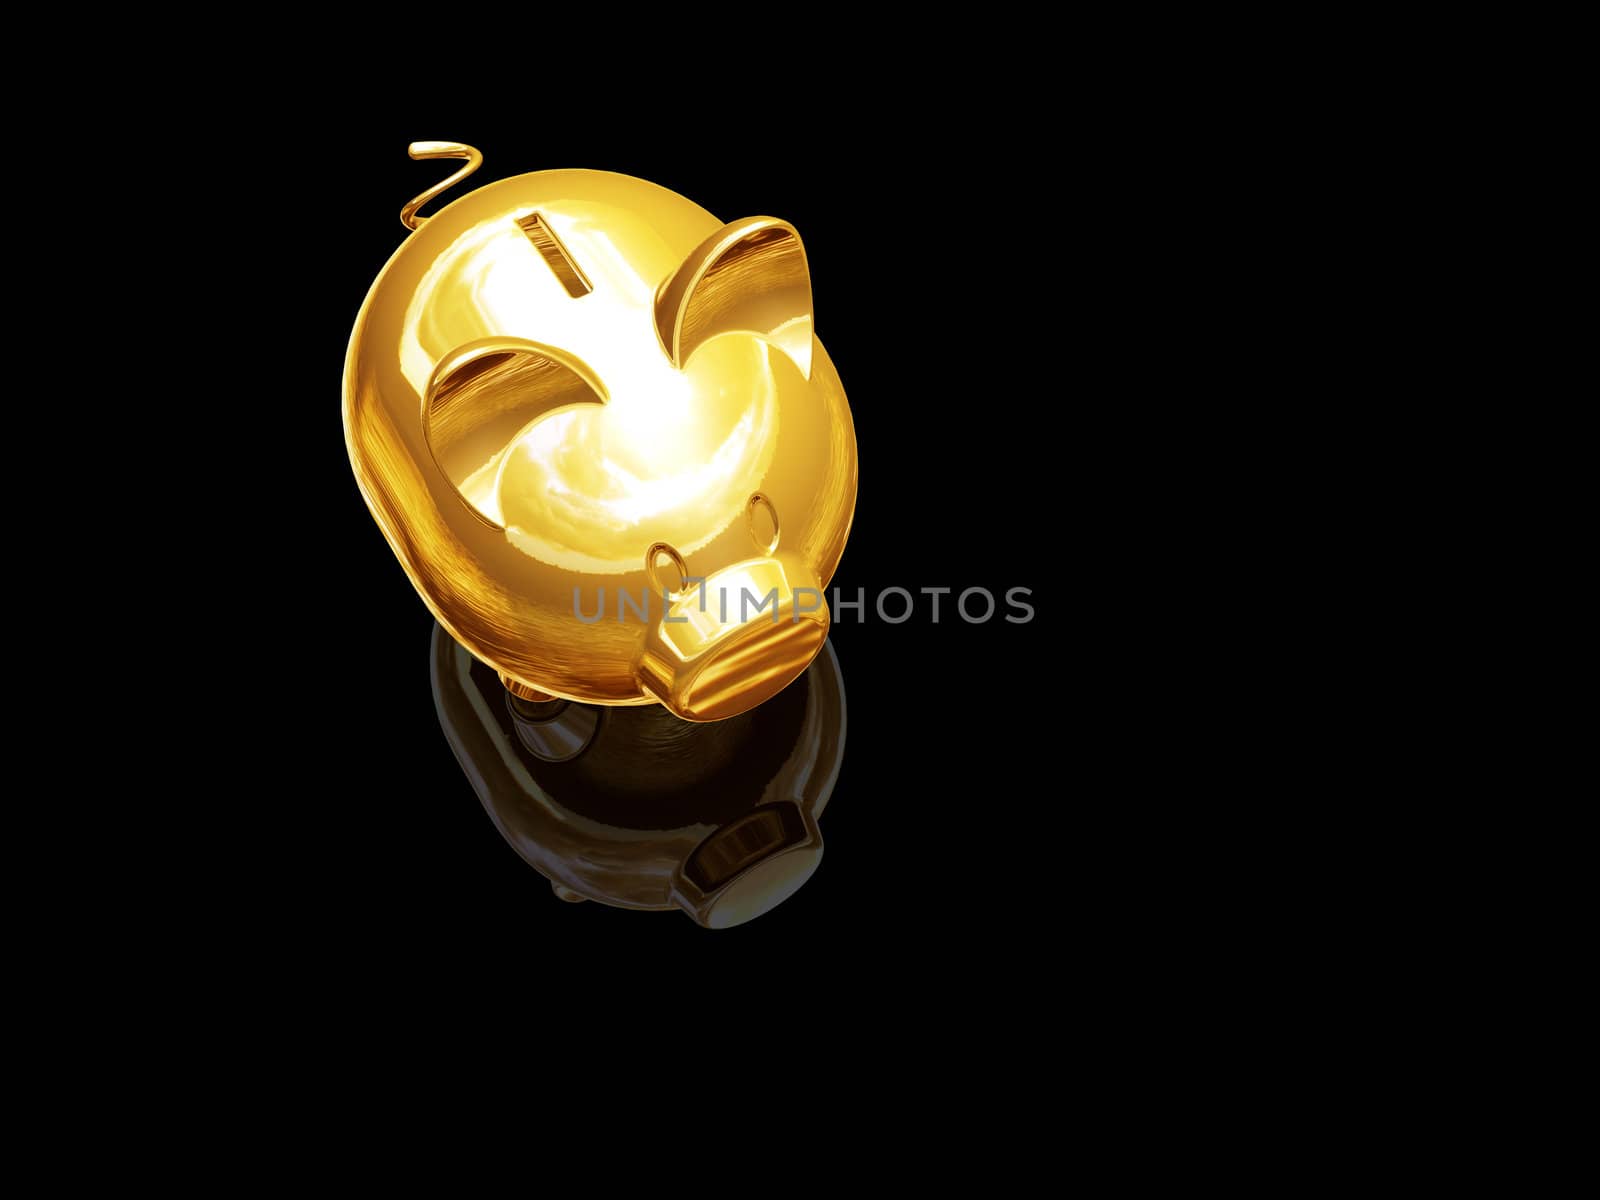 3D render of a gold piggy bank